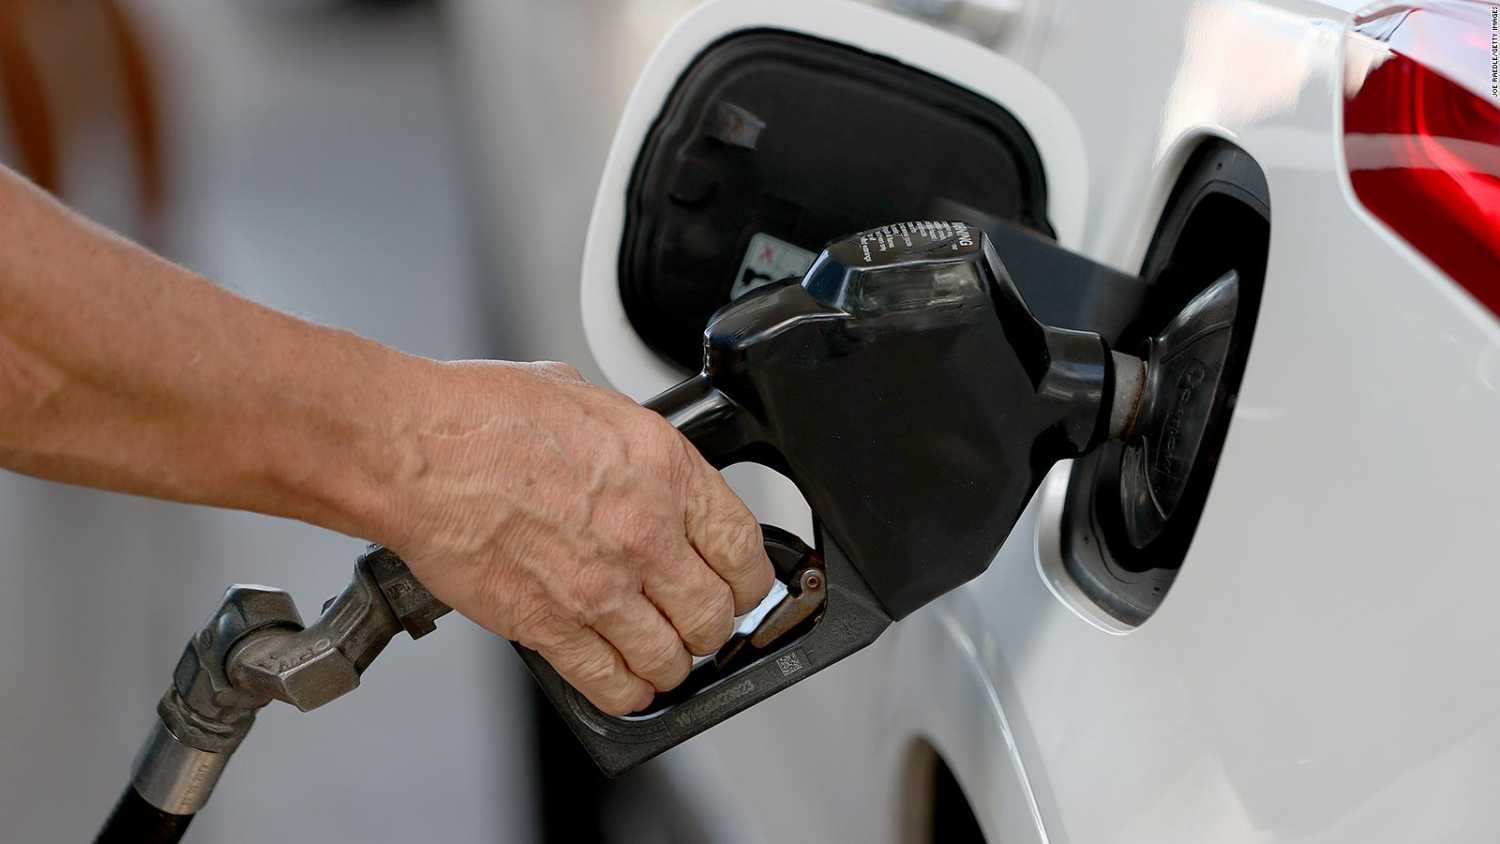 Costo de la gasolina se dispara en todo el mundo